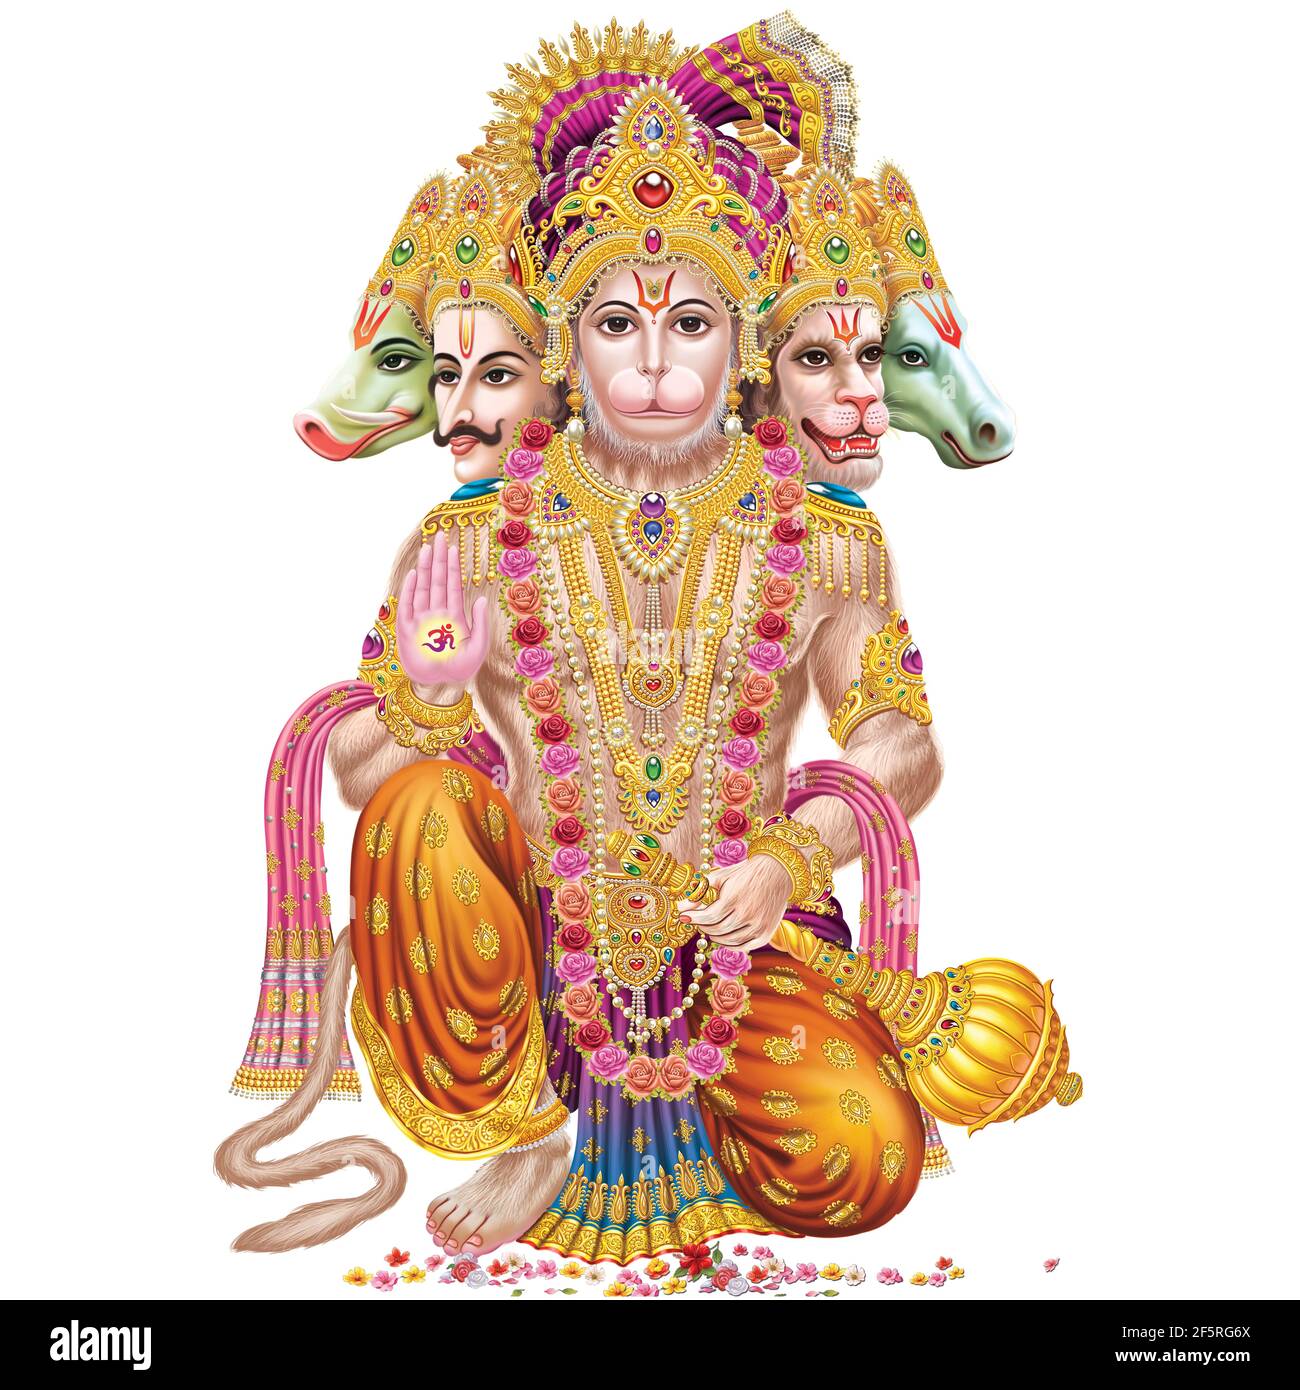 Durchsuchen Sie hochauflösende Stockbilder von Lord Hanuman Stockfoto